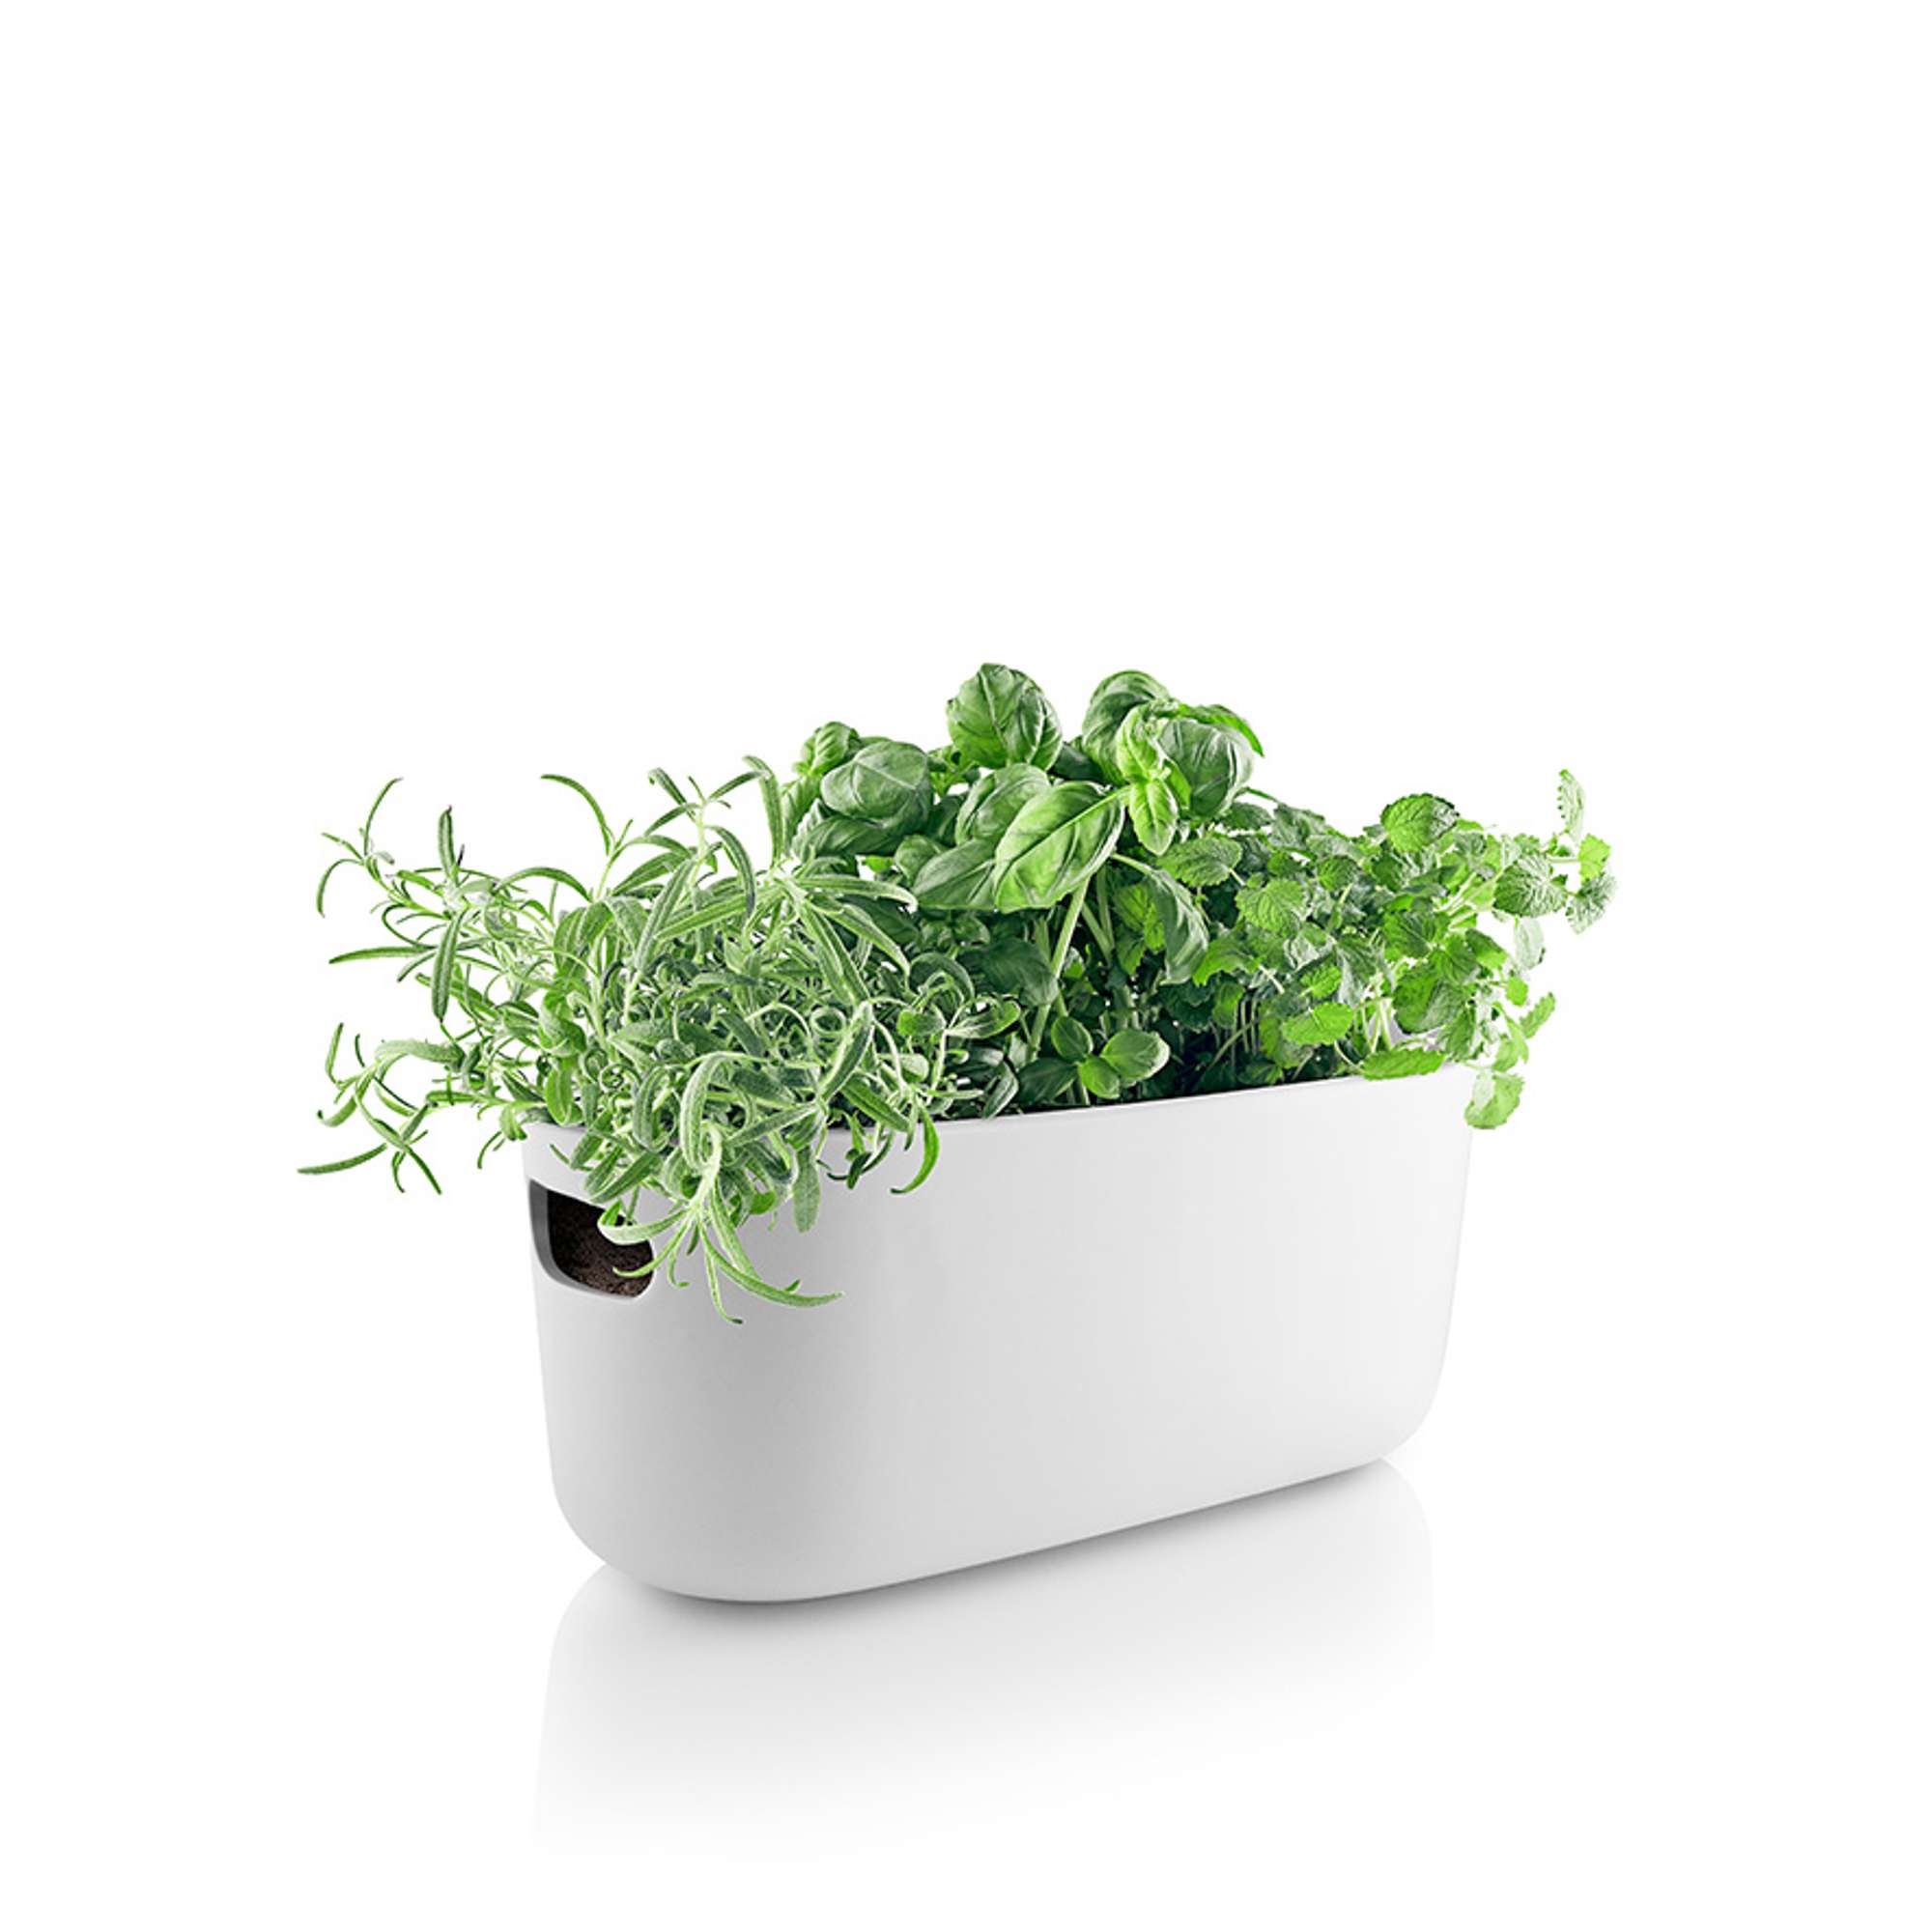 Herb organiser - Self-watering - White